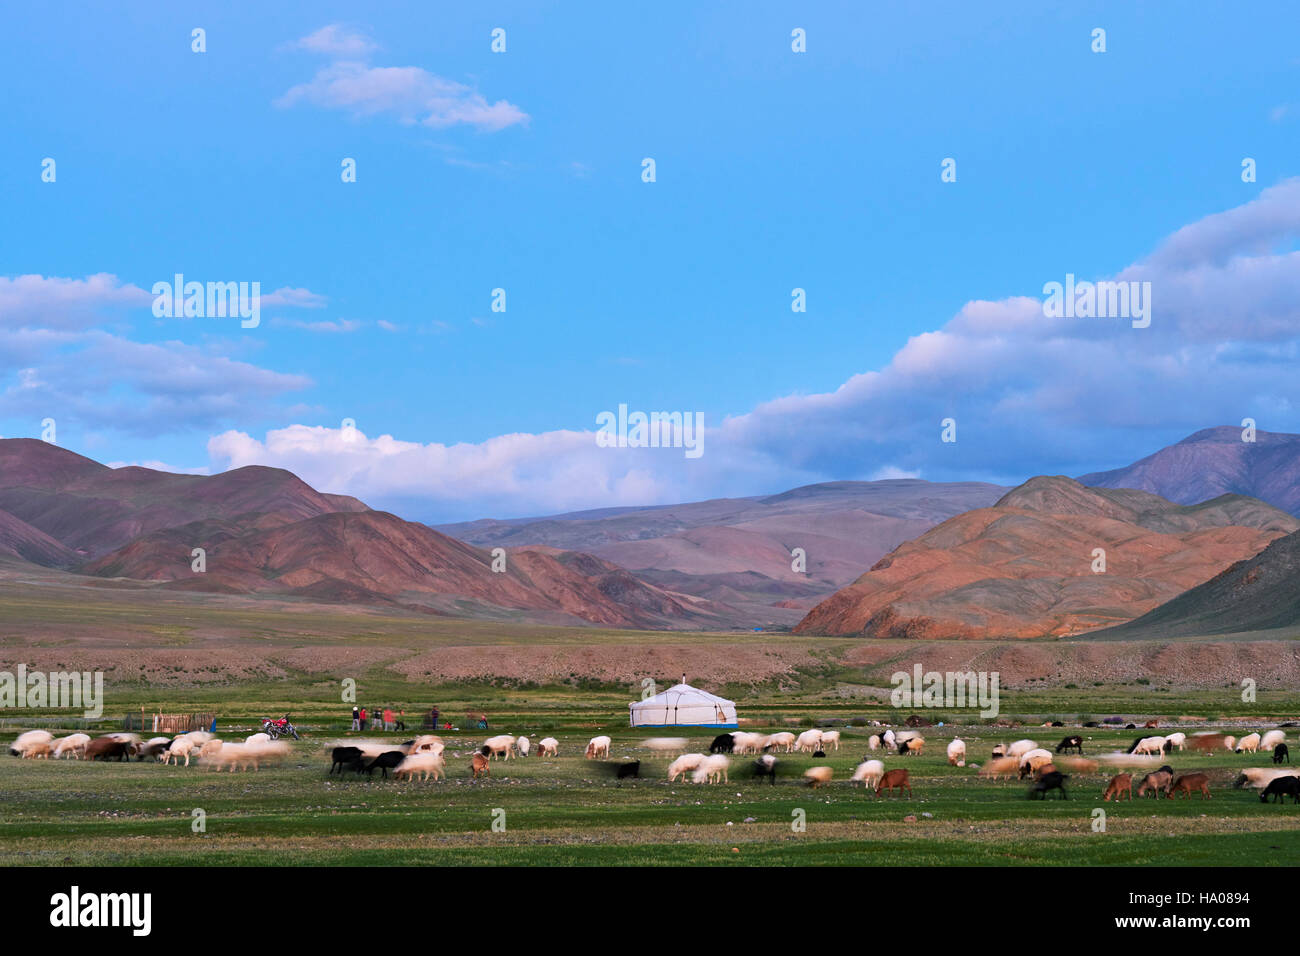 La Mongolie, Bayan-Ulgii province, l'ouest de la Mongolie, les montagnes colorées de l'Altay, camp nomade du peuple kazakh Banque D'Images